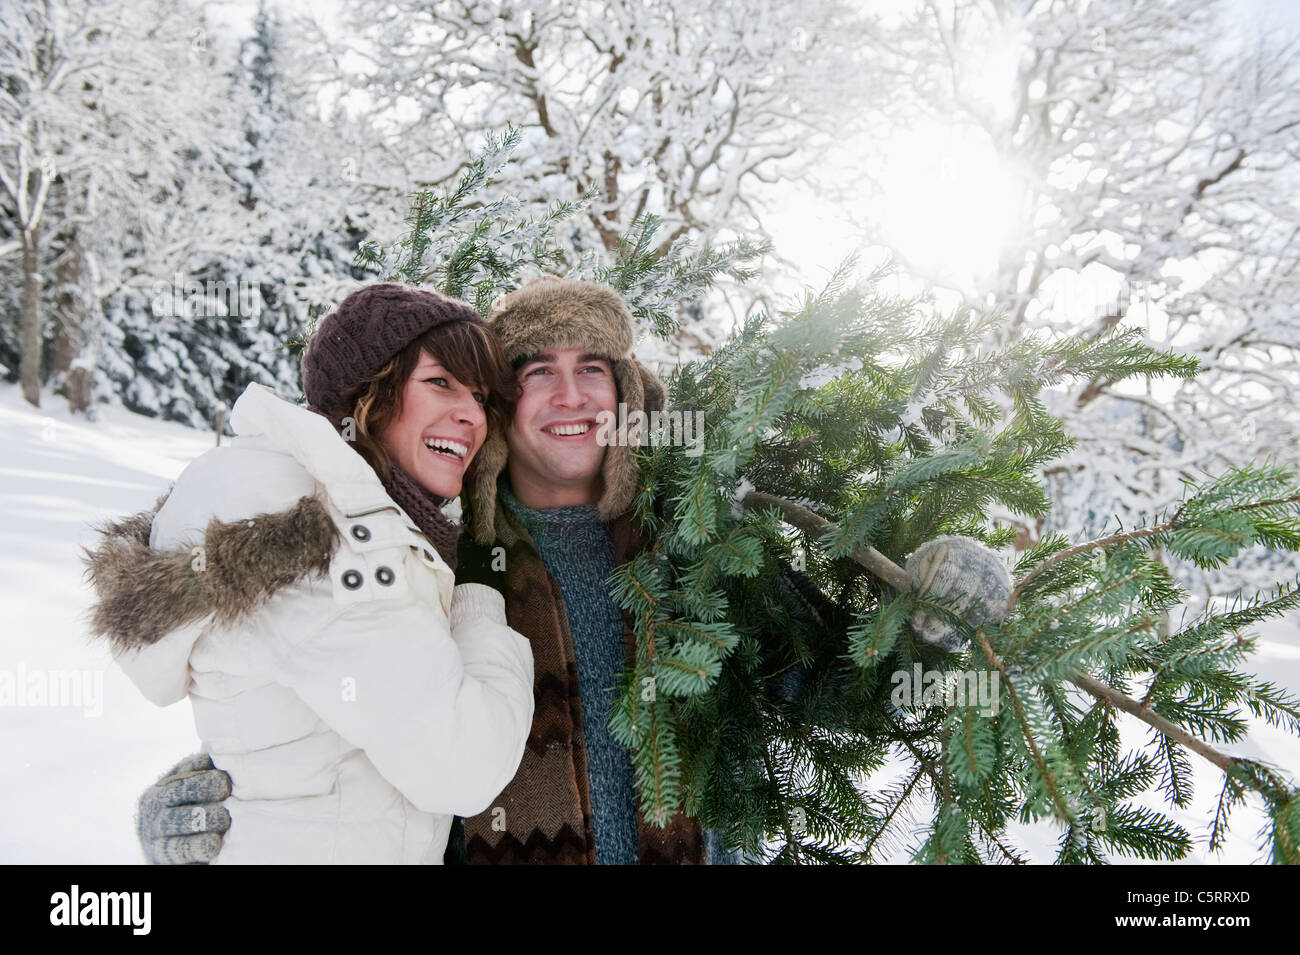 Österreich, Salzburger Land, Flachau, junger Mann und Frau mit Weihnachtsbaum im Schnee Stockfoto